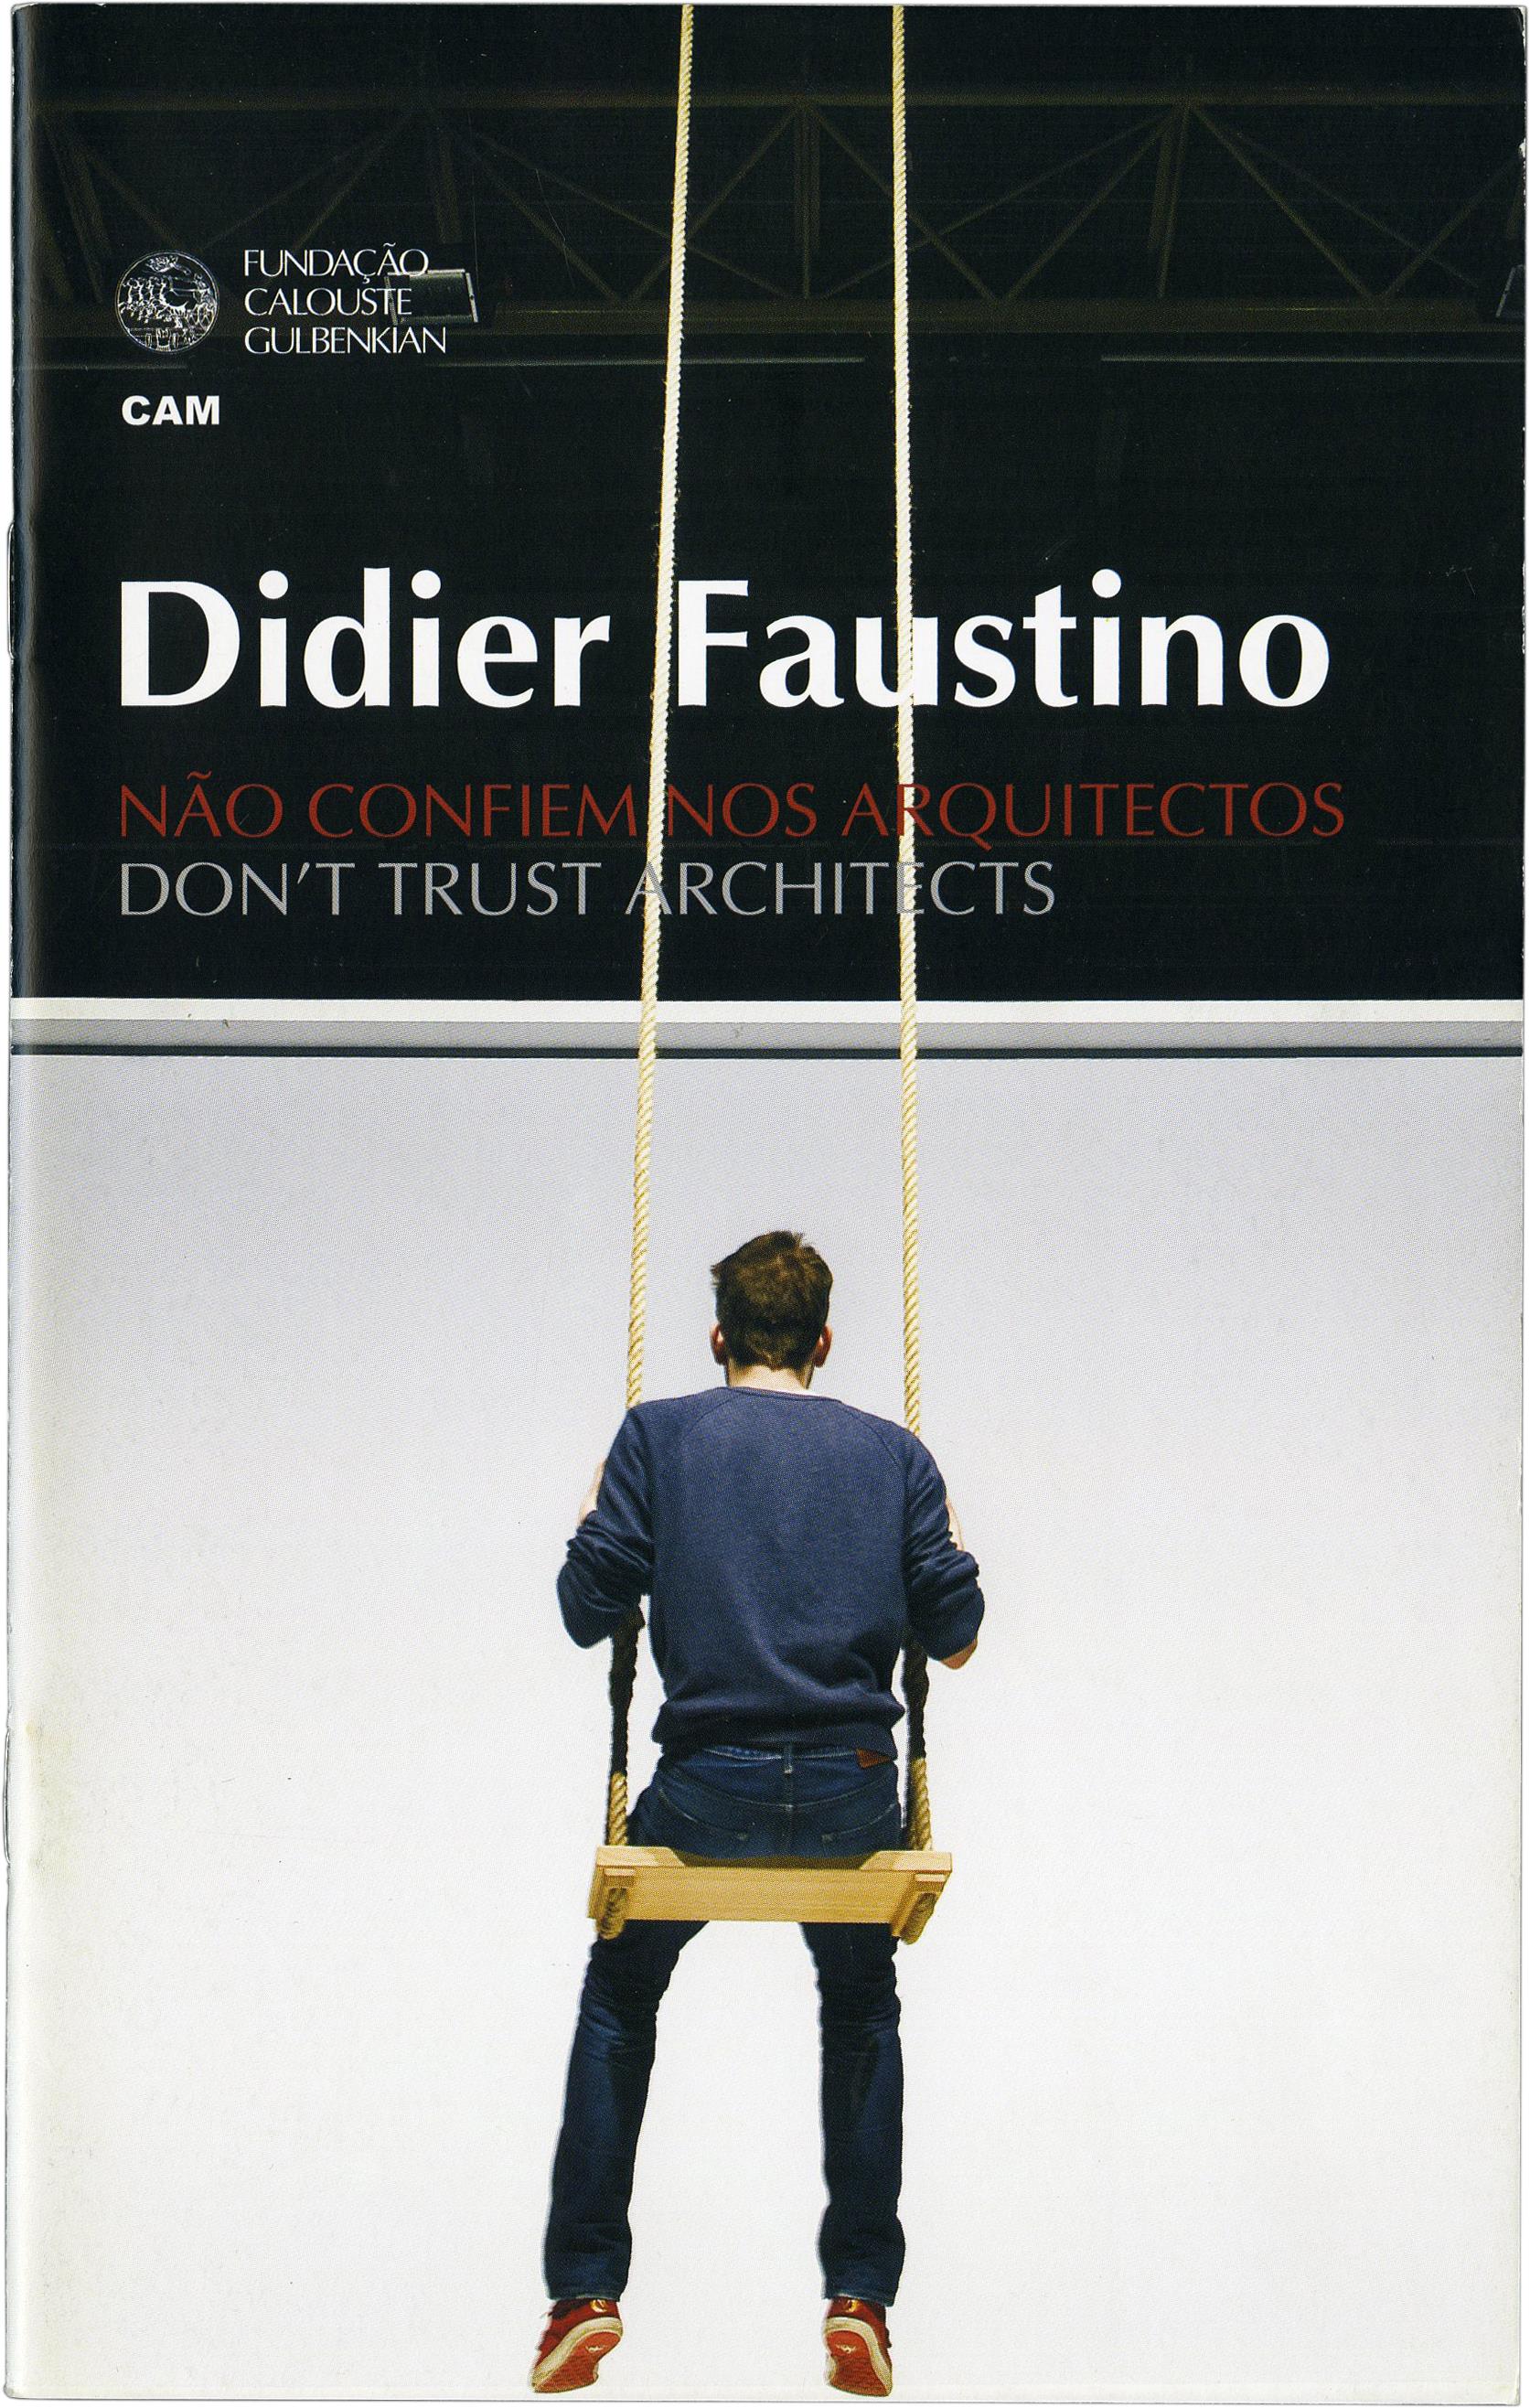 Didier Fiúza Faustino. Não confiem nos arquitectos /Don't trust architects